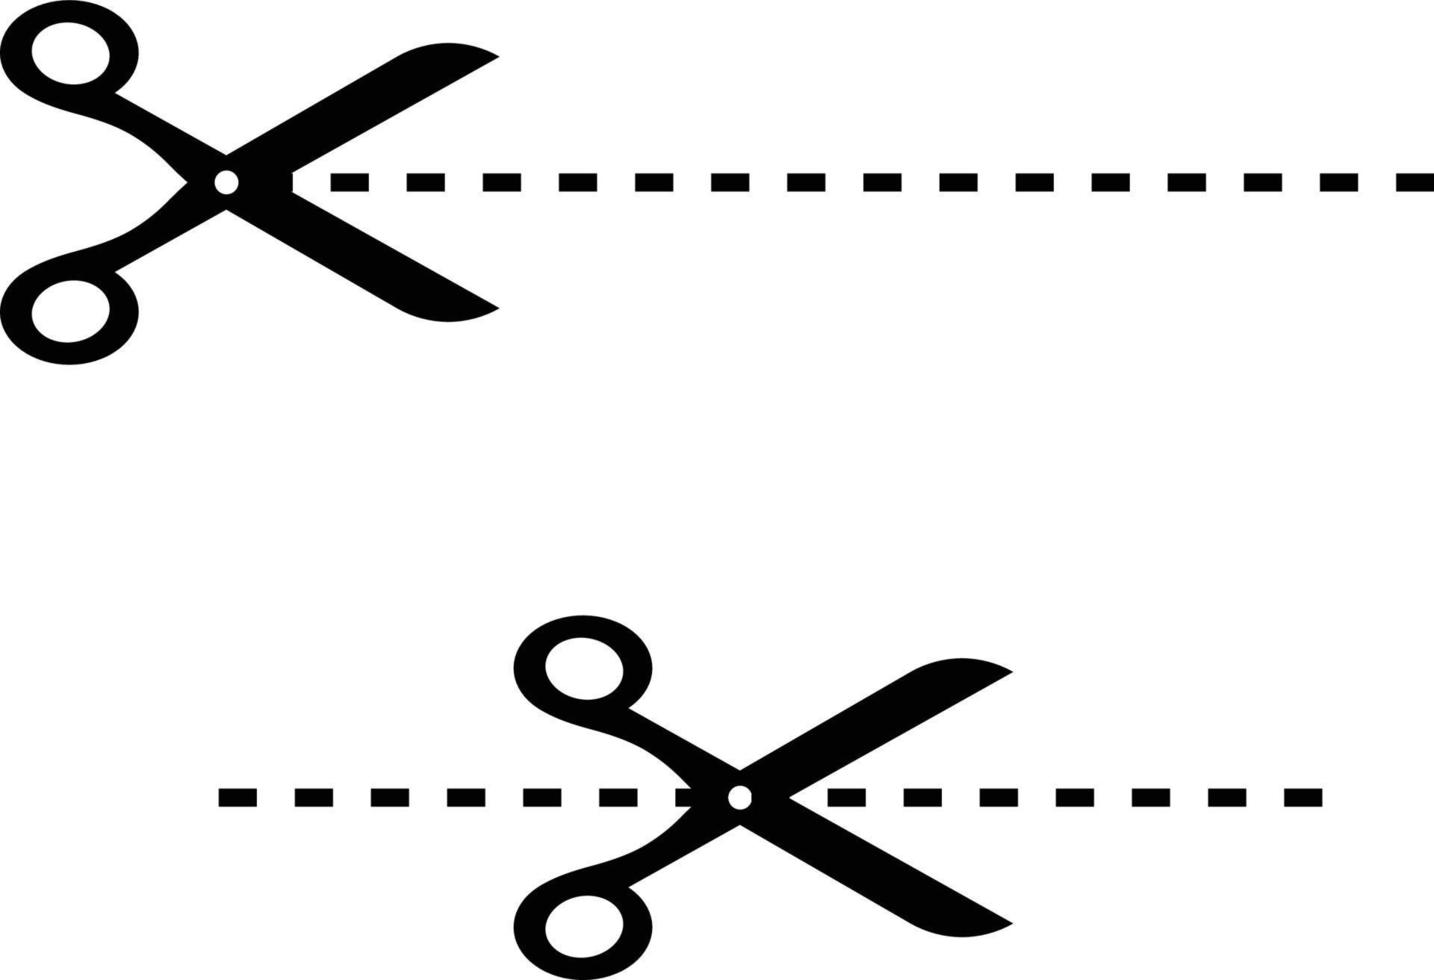 couper, recadrer, couper l'icône ou le signe du symbole des ciseaux vecteur